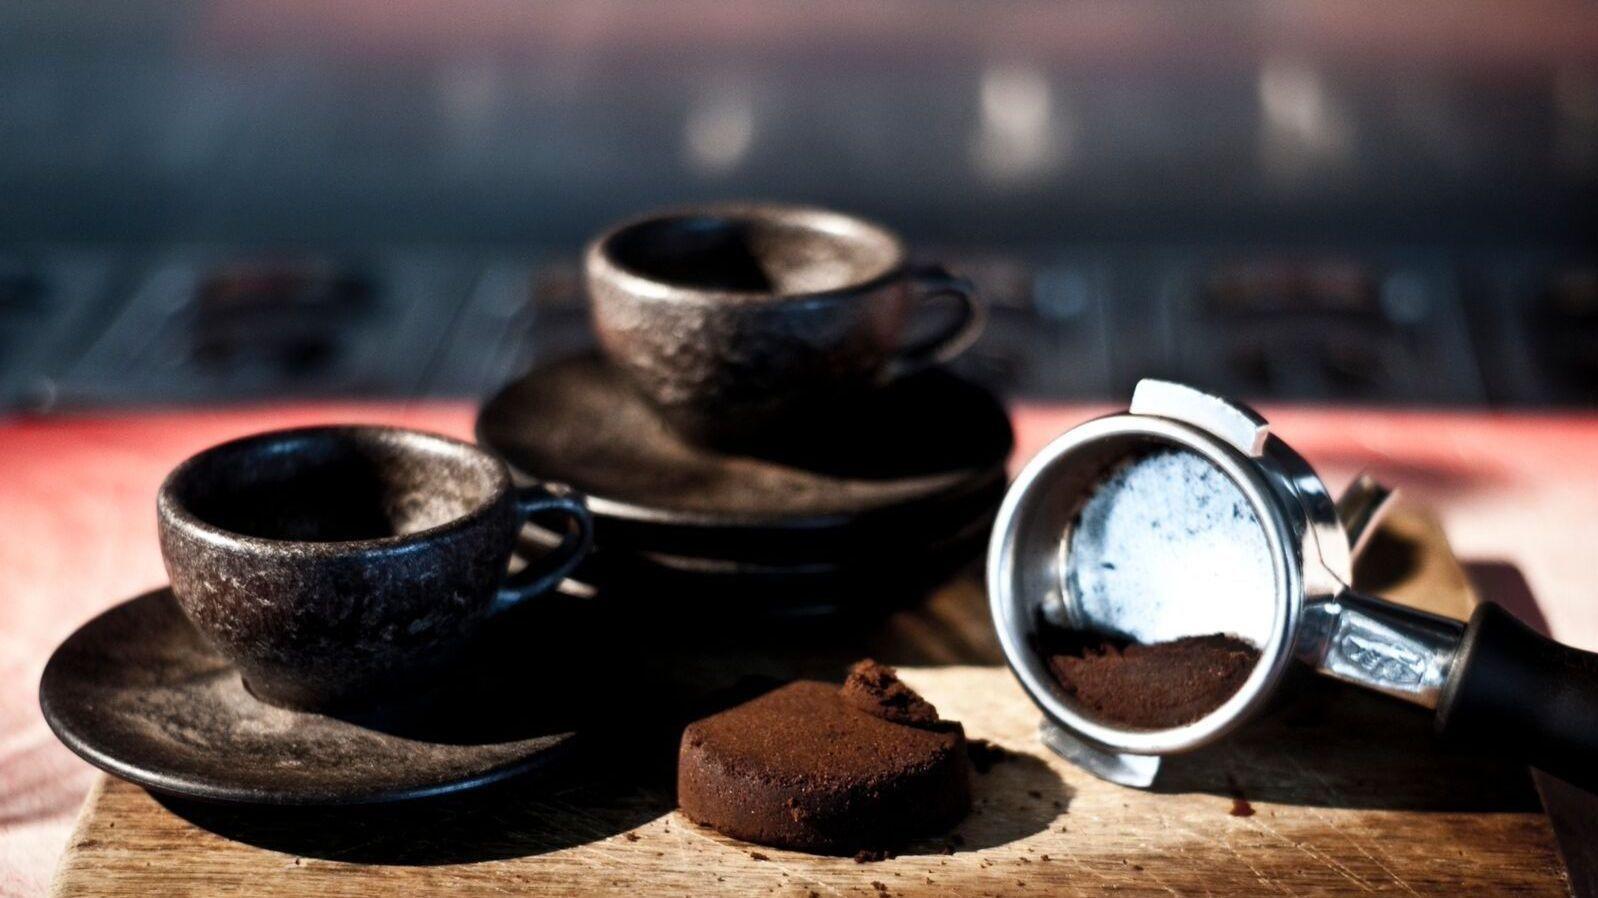 DESIGN: Kaffe fra alle kanter med disse nye espressokoppene. Foto: Kaffeeform